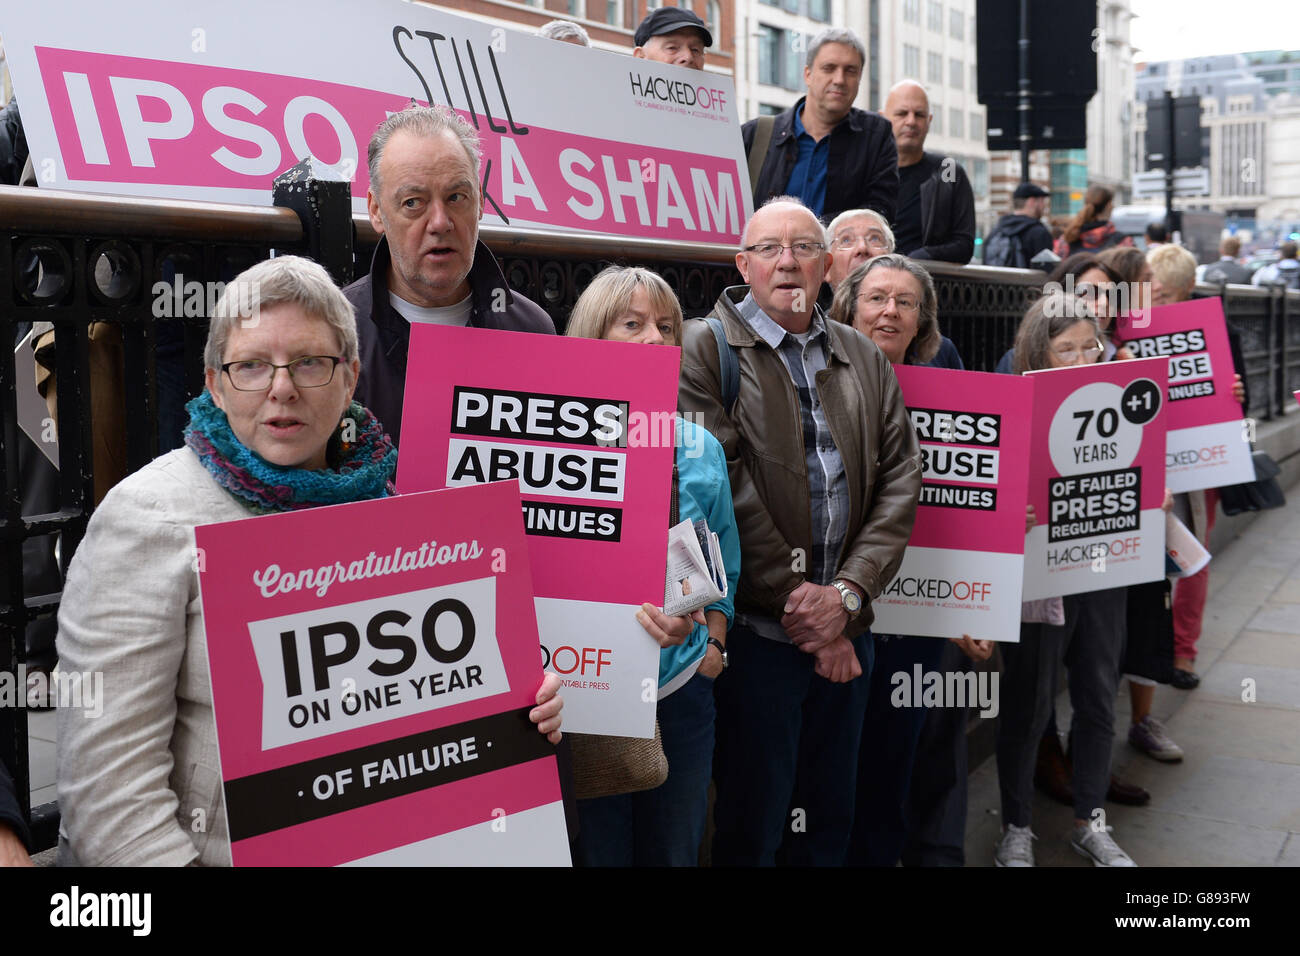 Los activistas de hacked Off sostienen pancartas en una protesta por la falta de eficacia del regulador Independent Press Standards Organization (IPSO) un año después de su formación, fuera de sus oficinas en Londres. Foto de stock